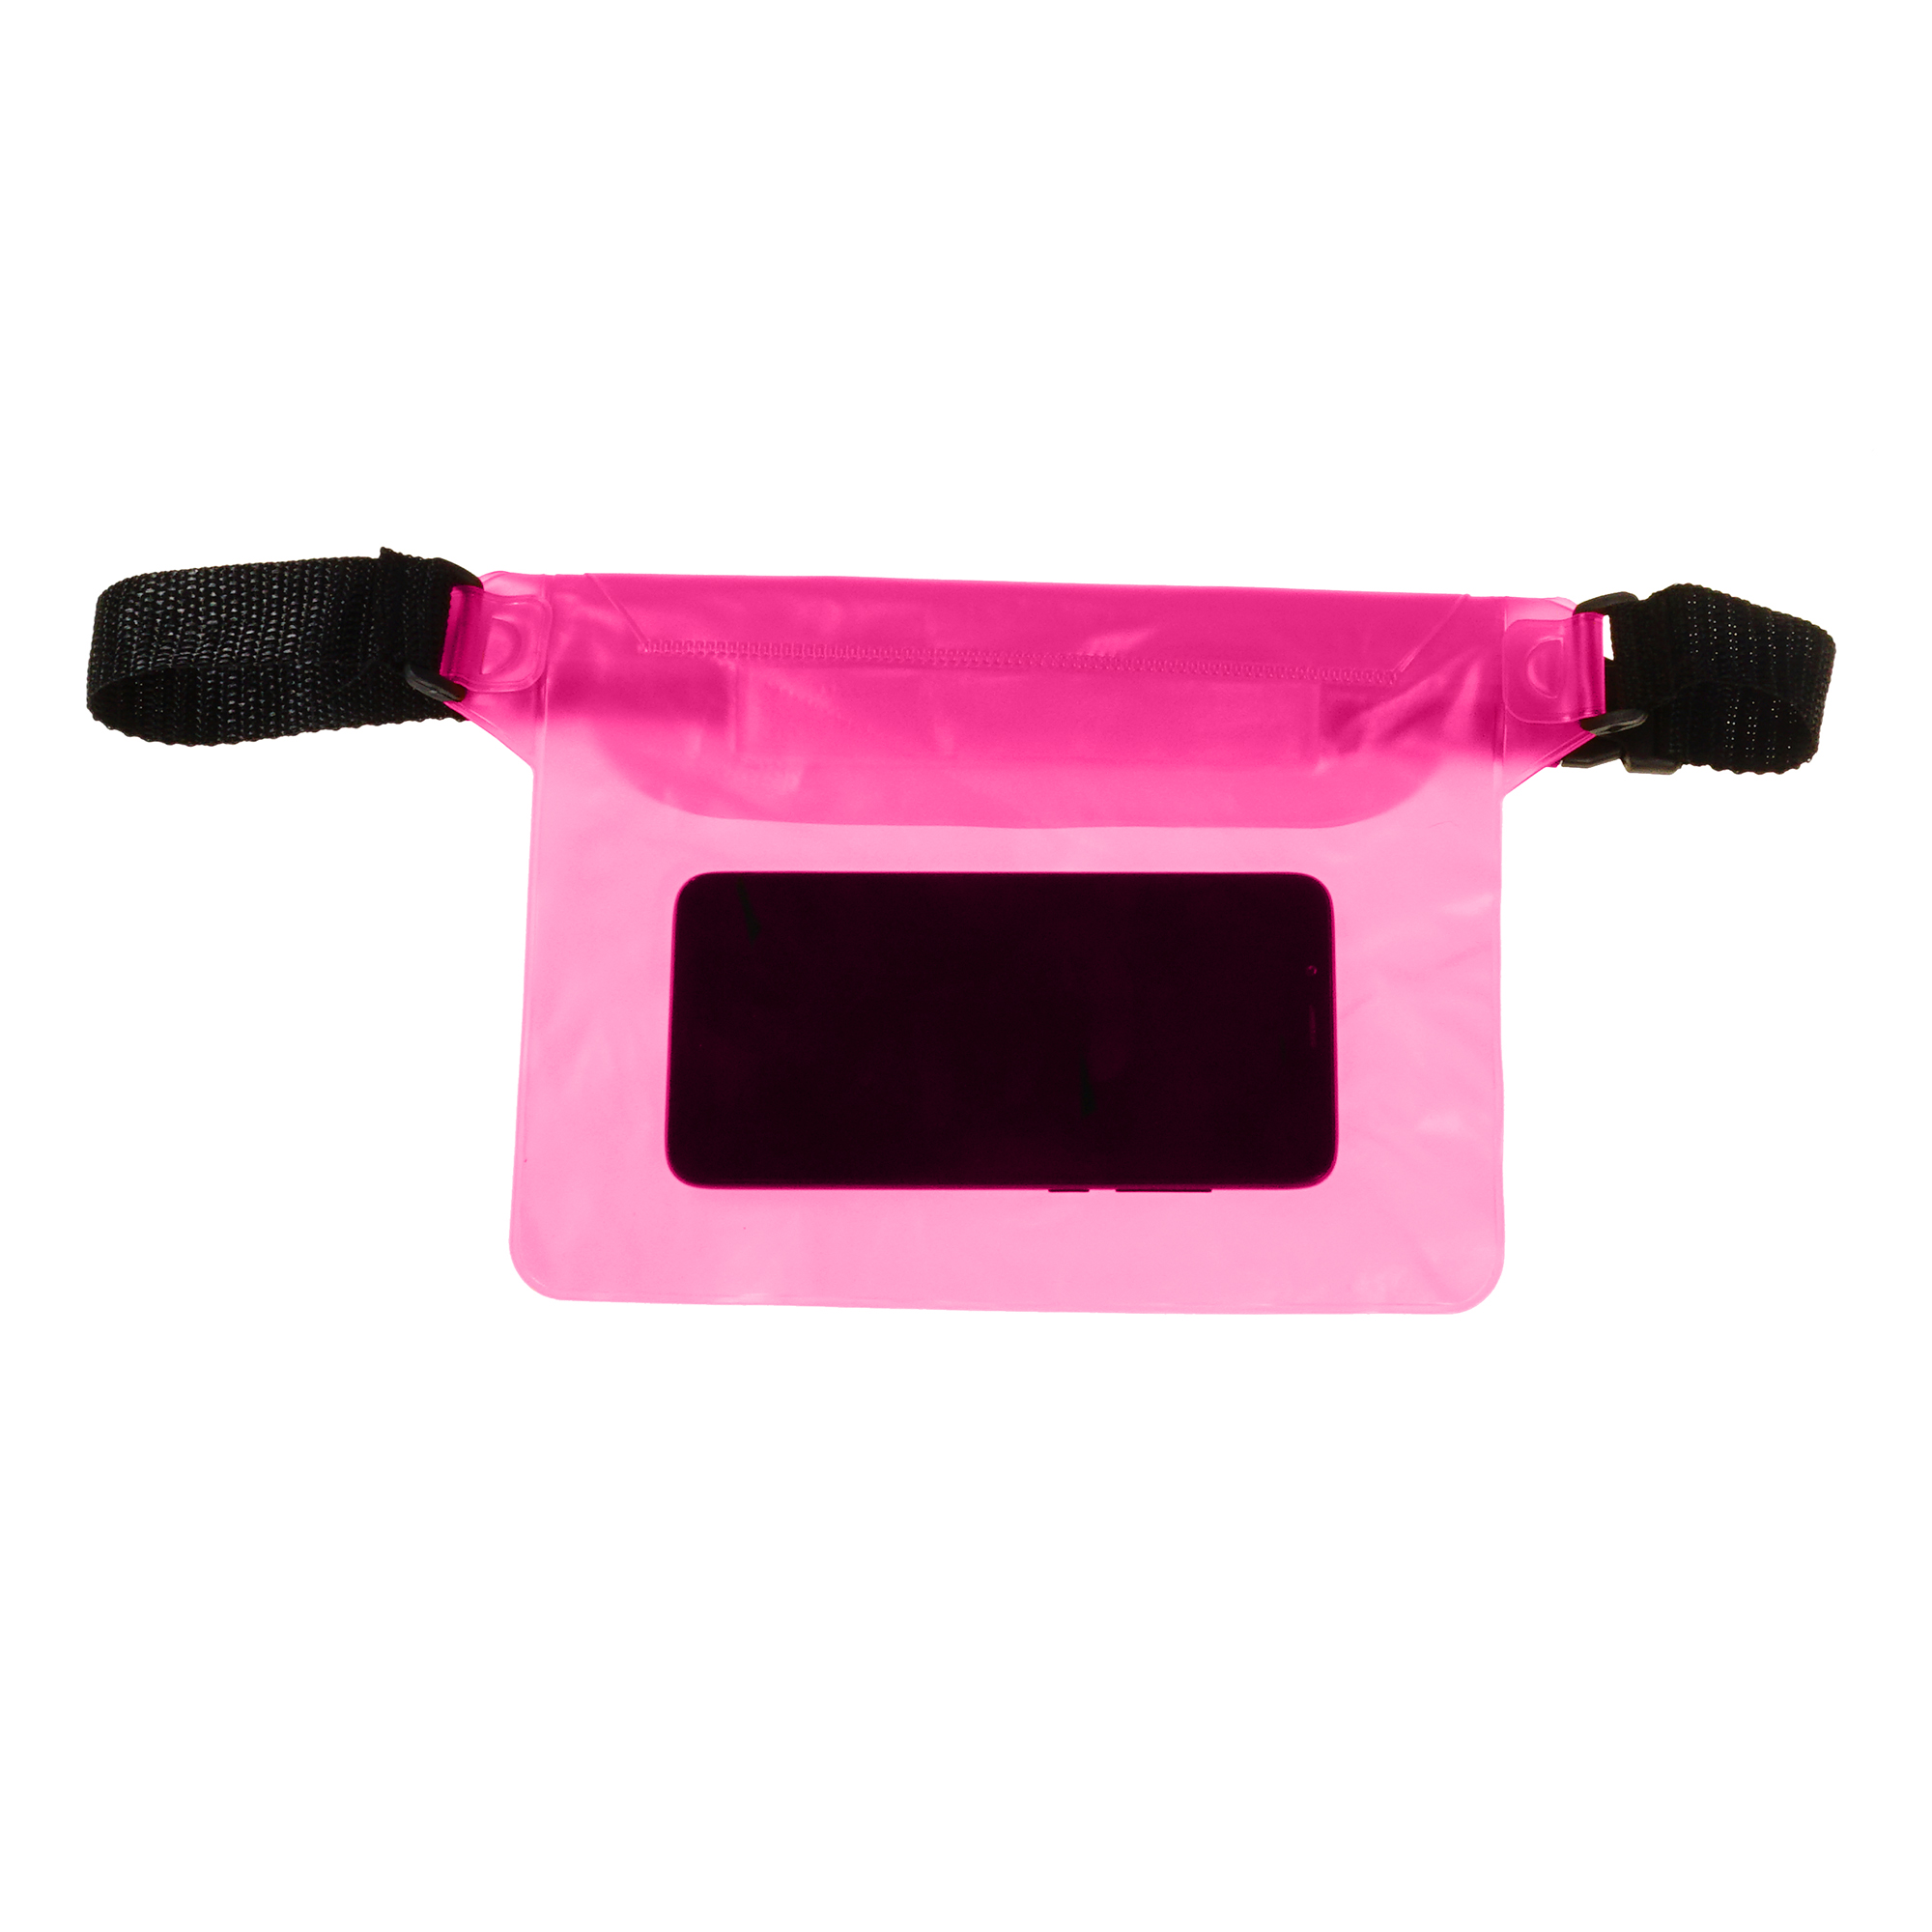 Акция на Поясна сумка чохол Supretto водонепроникна, рожева (71390006) от Wellamart